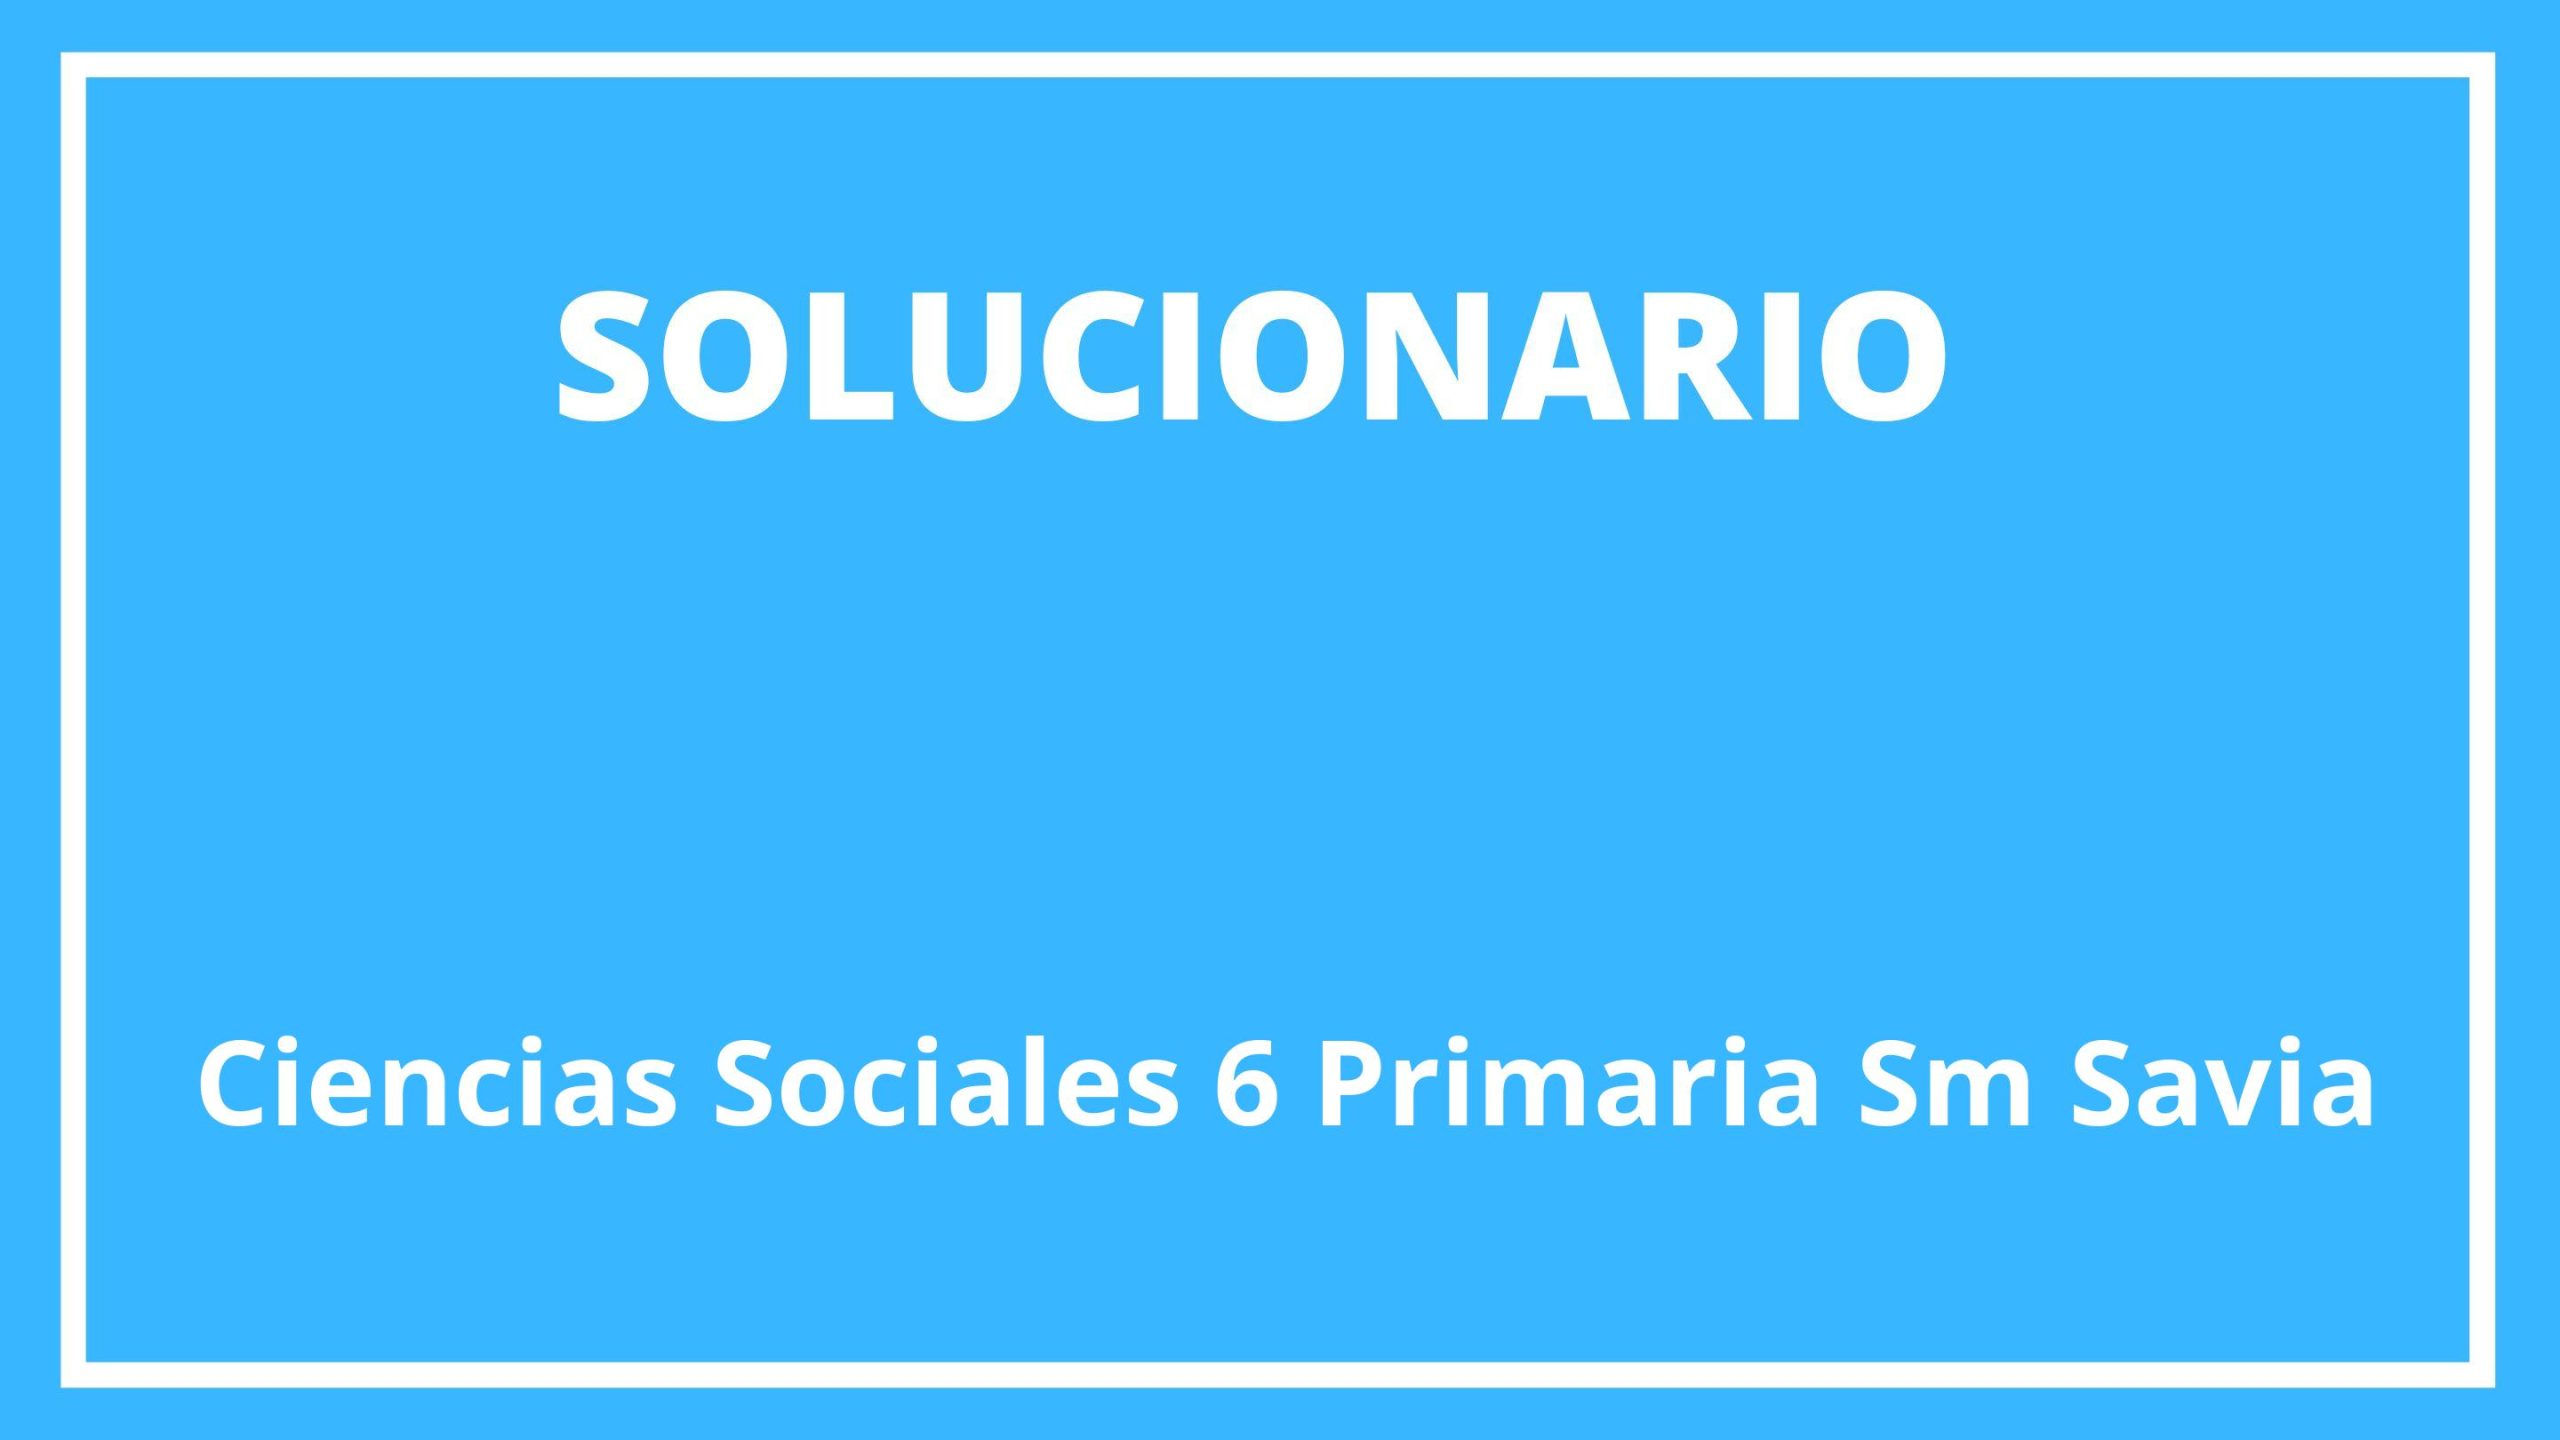 Ciencias Sociales 6 Primaria Sm Savia Solucionario 9706